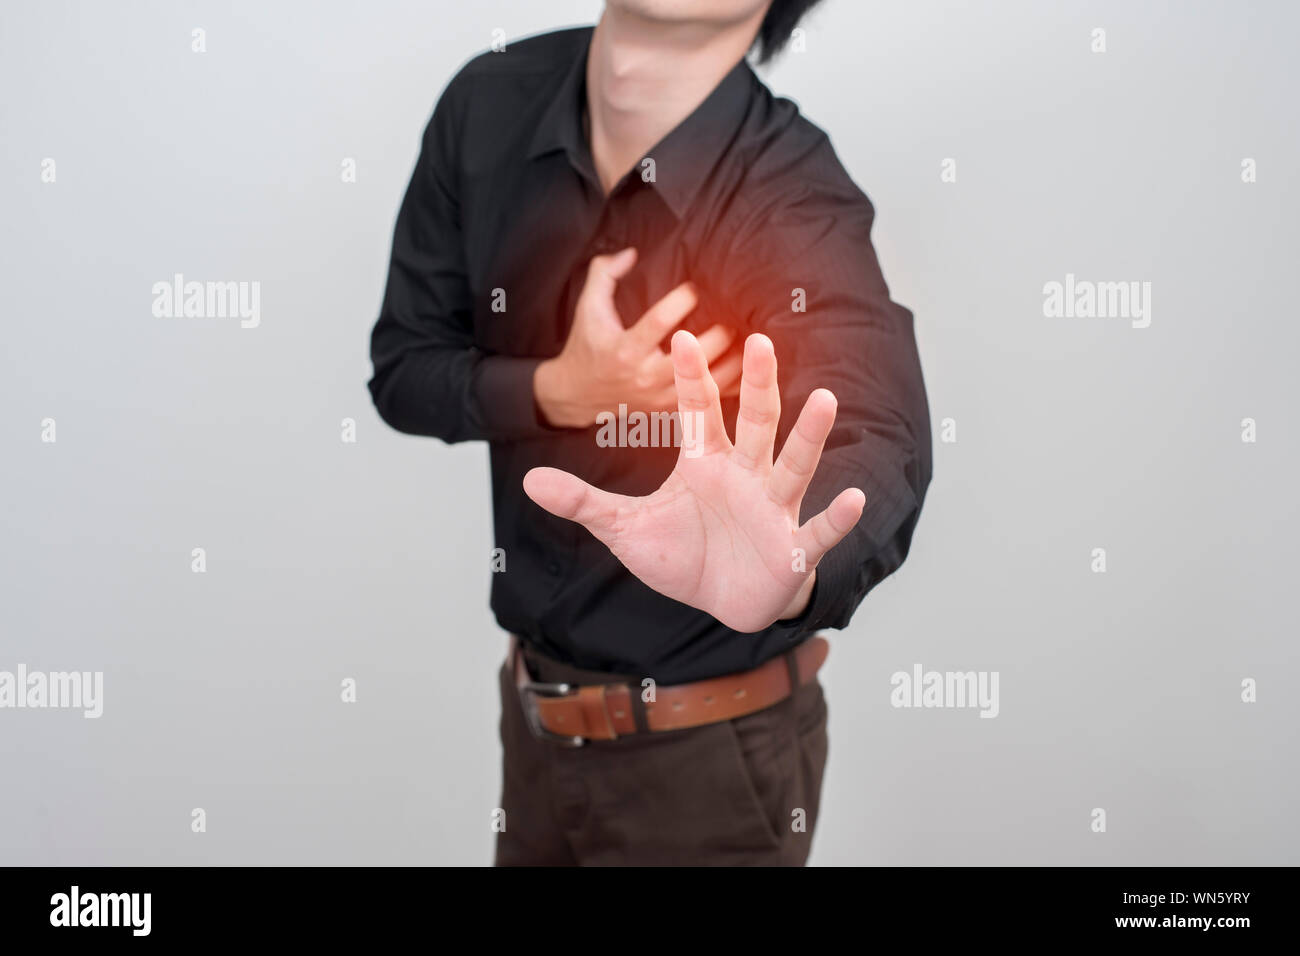 Mittelteil des Menschen seine Brust und zeigt Stop Geste gegen die farbigen Hintergrund Stockfoto